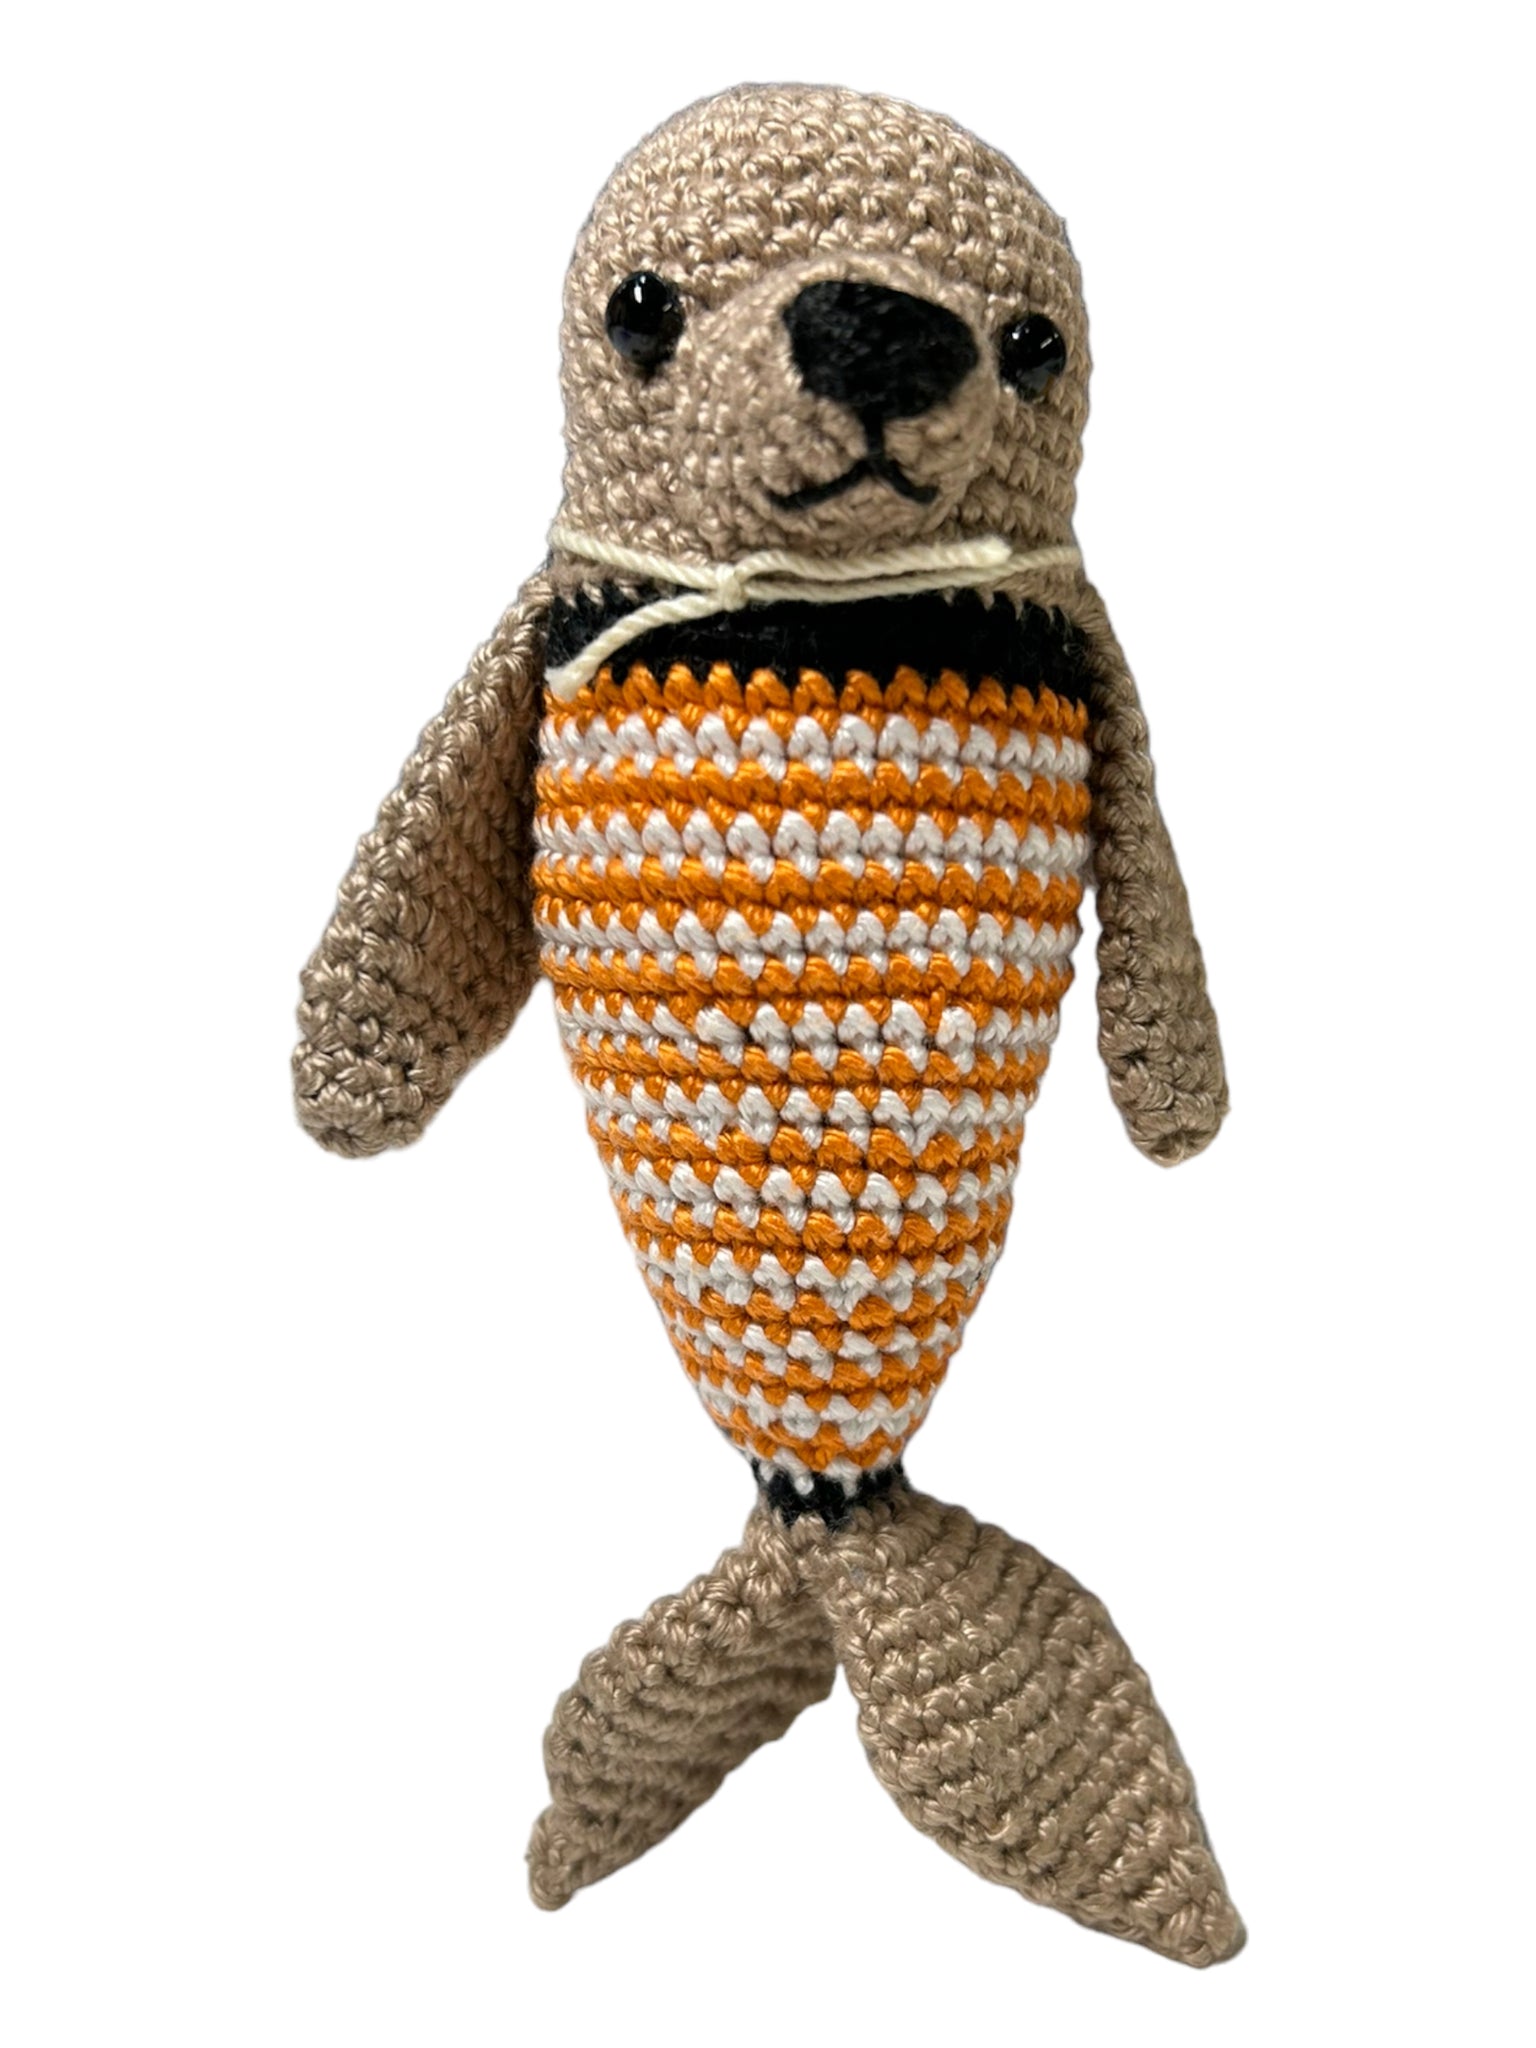 Crocheted Walrus